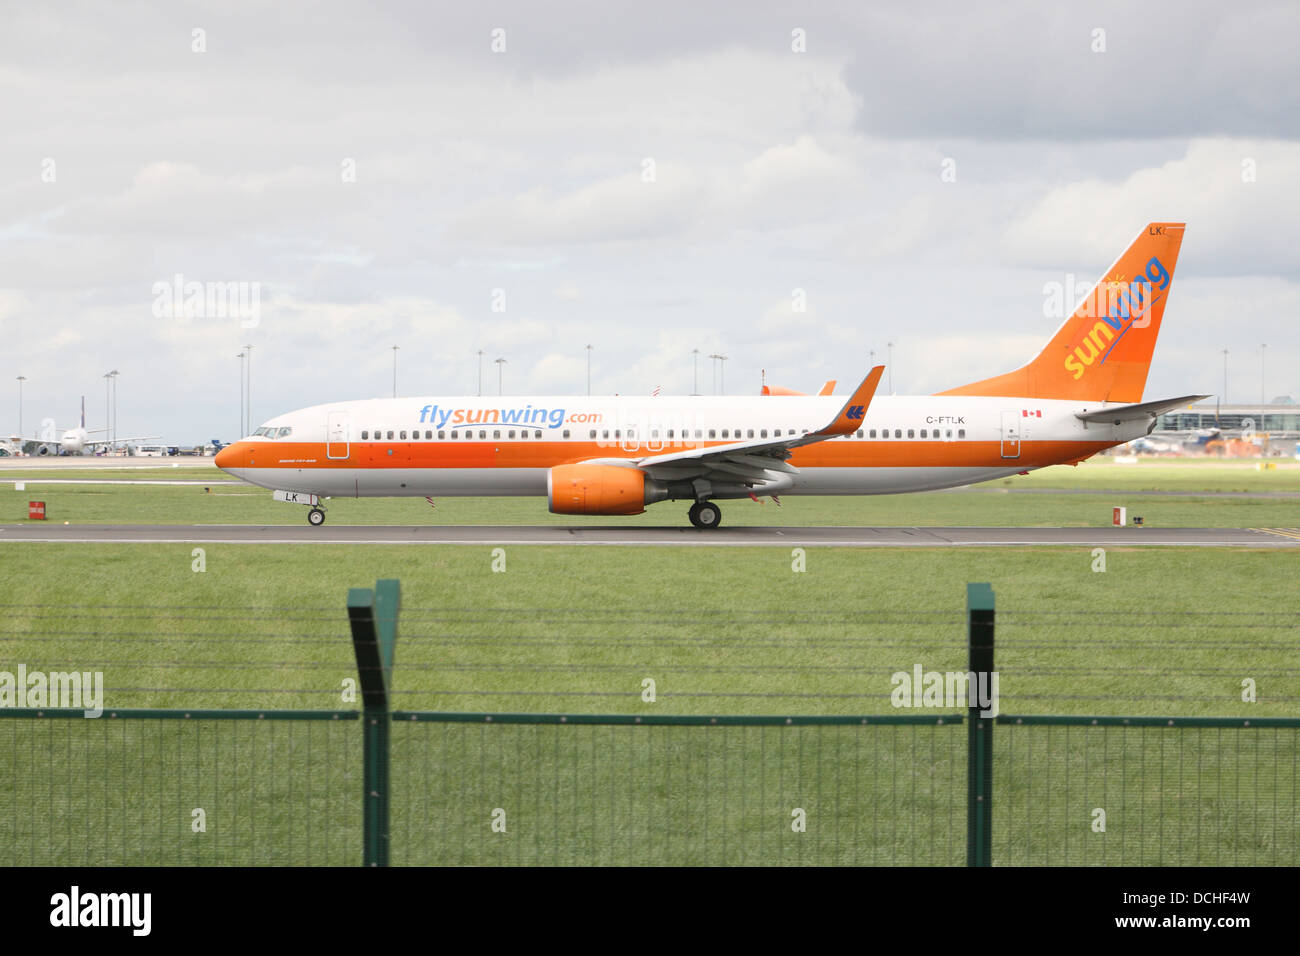 Sunwings flight taxiing at Dublin airport Stock Photo